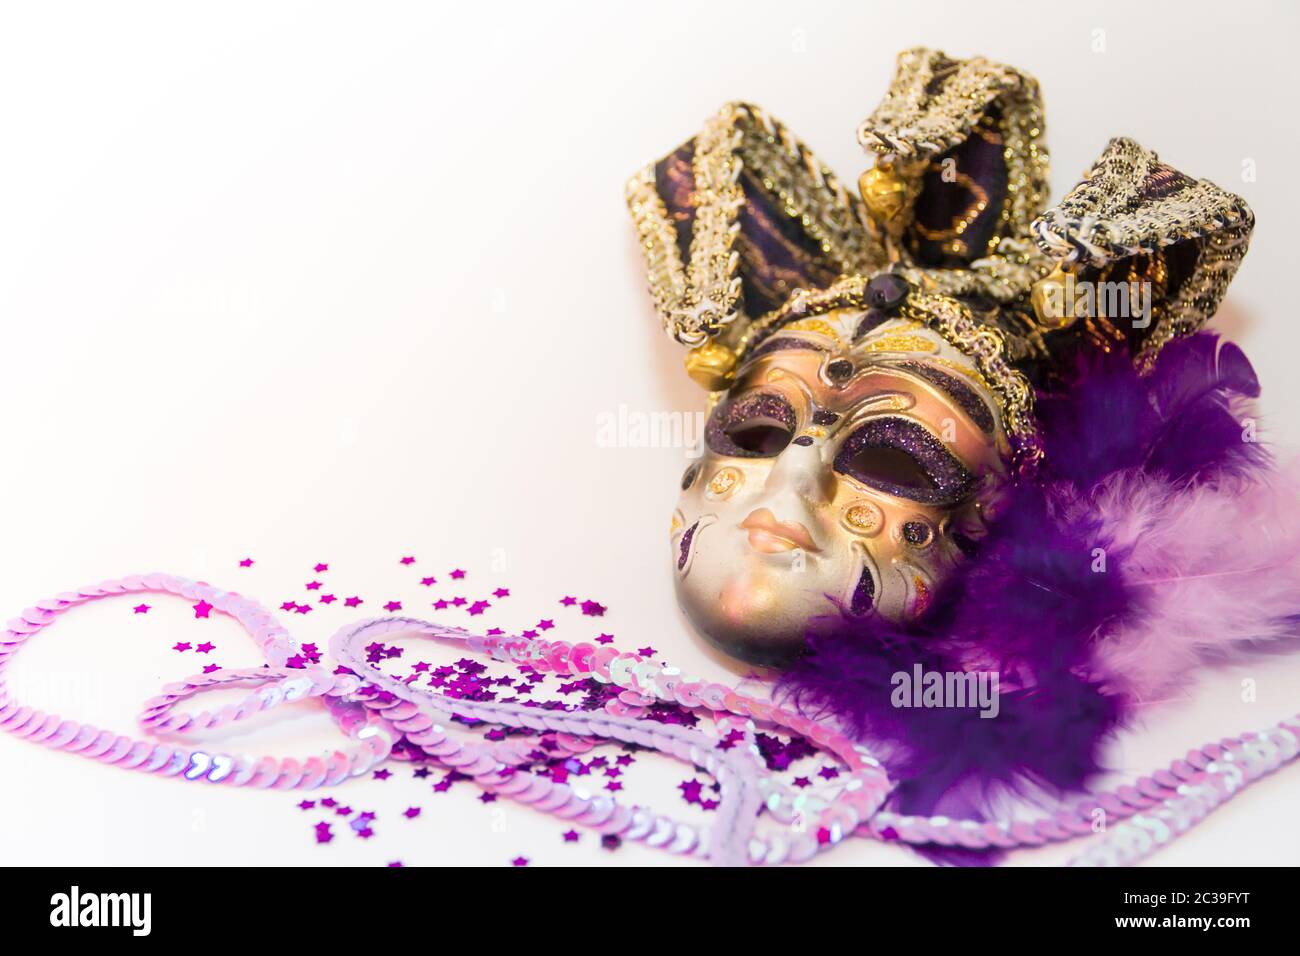 Máscara Del Carnaval De Venecia Fotografía editorial - Imagen de plumas,  pintoresco: 66333812